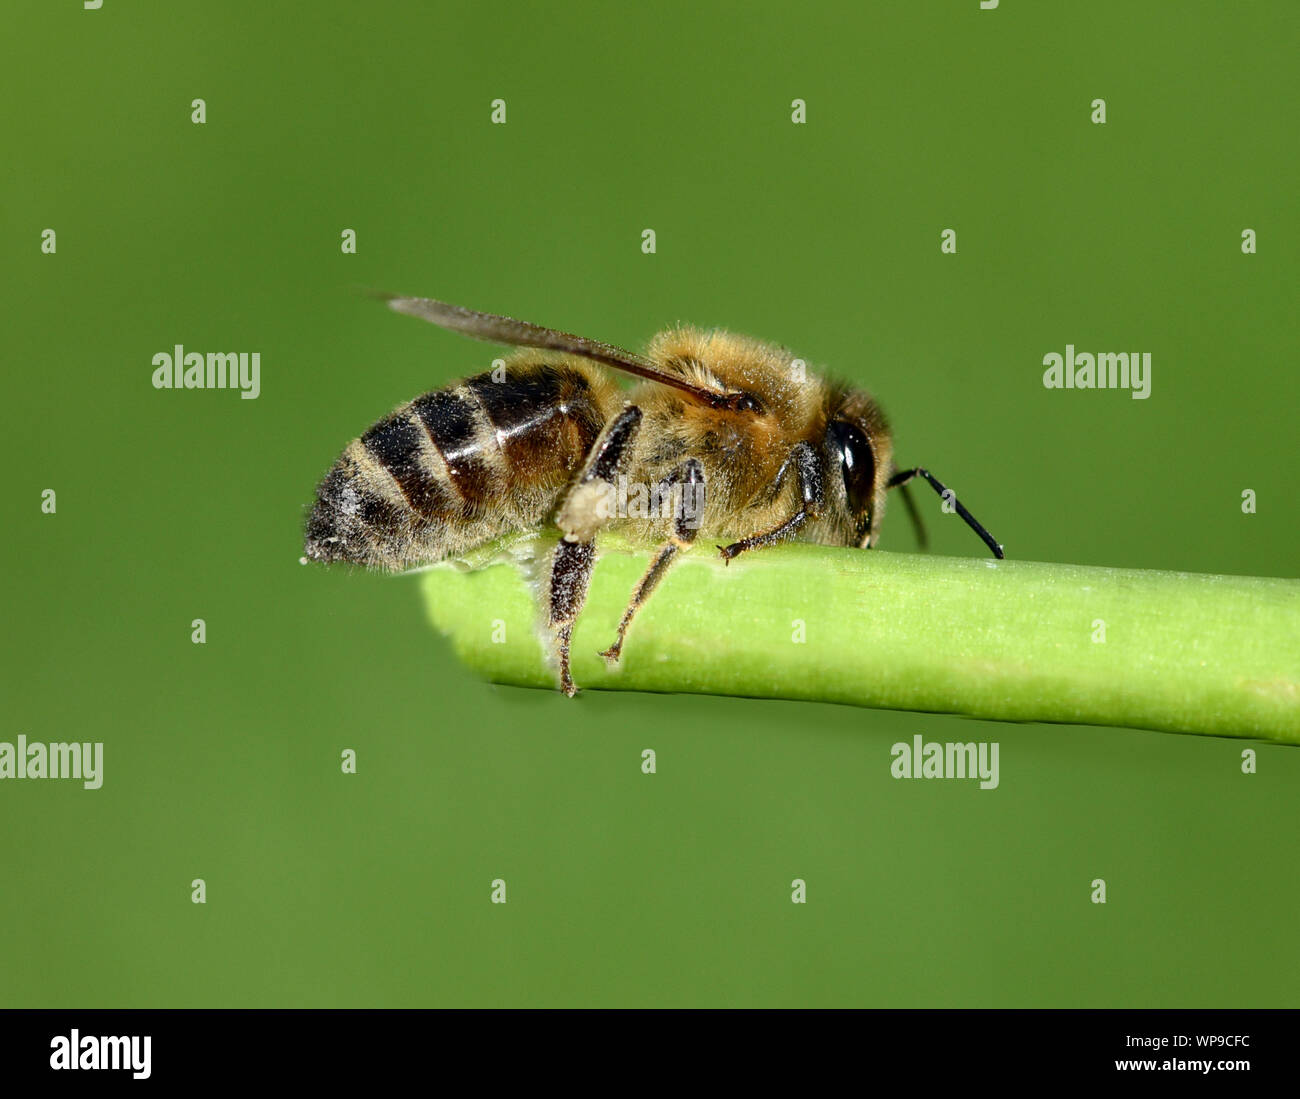 Honigbiene, Apis mellifera, ist ein wichtiges Insekt zur Bestaeubung von Pflanzen und zum Sammeln von Honig. Honey bee, Apis mellifera, is an importan Stock Photo